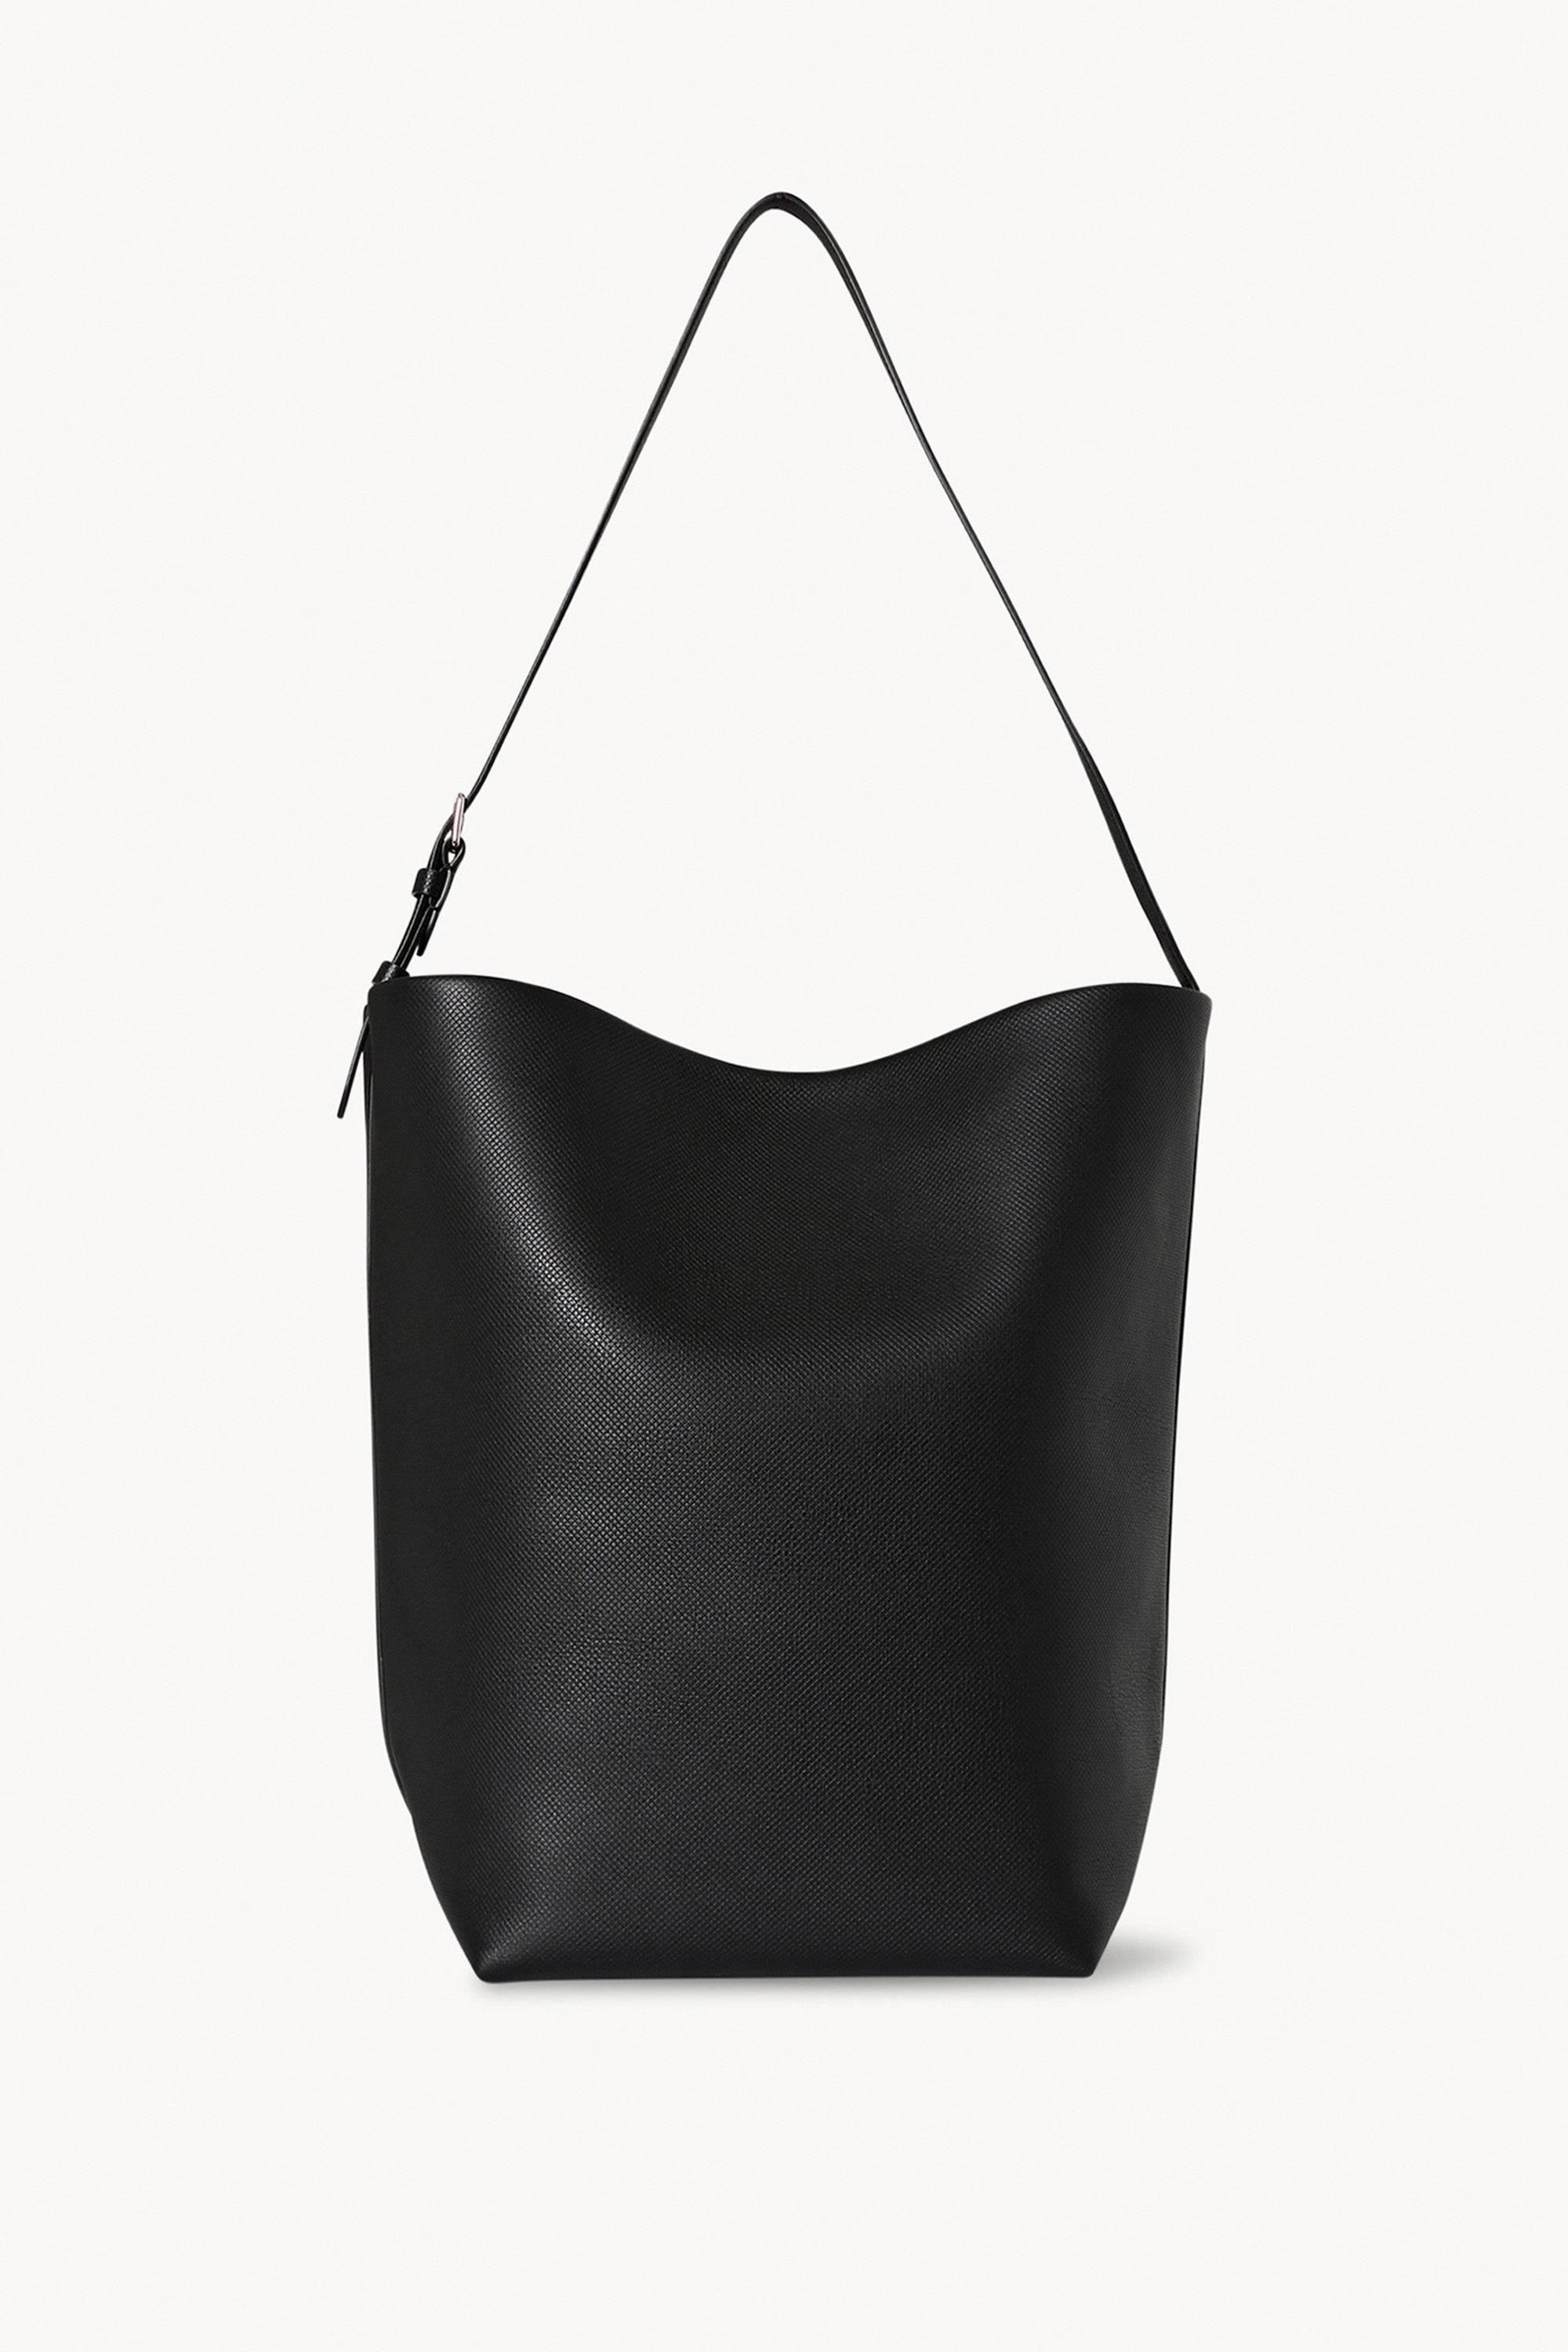 The Row Large Leather Shoulder Bag - Black Shoulder Bags, Handbags -  THR130795